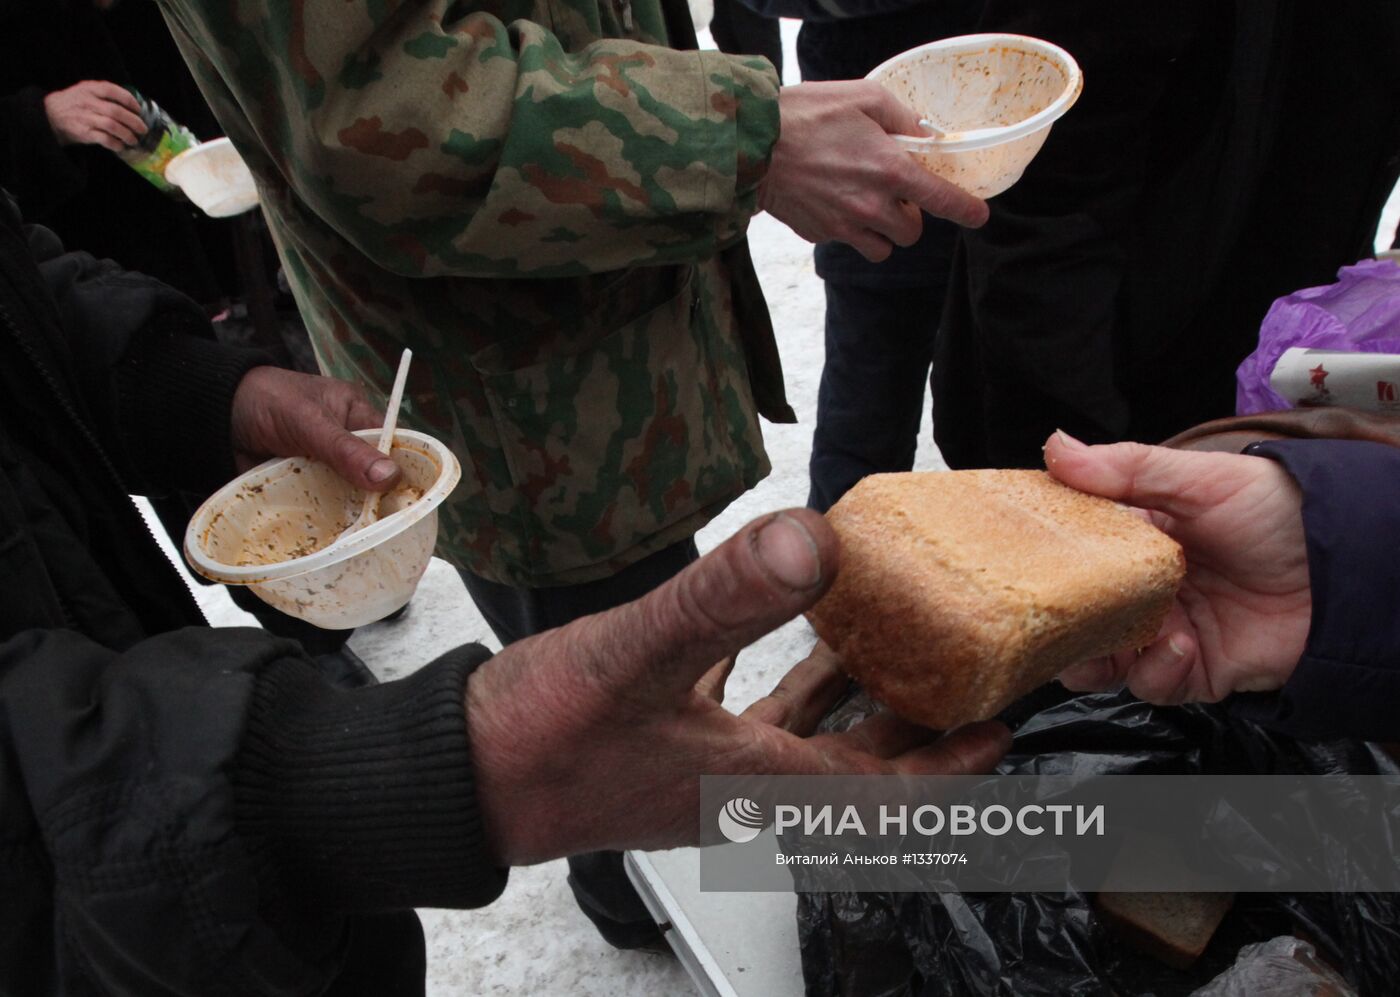 Бесплатные обеды раздают бездомным во Владивостоке